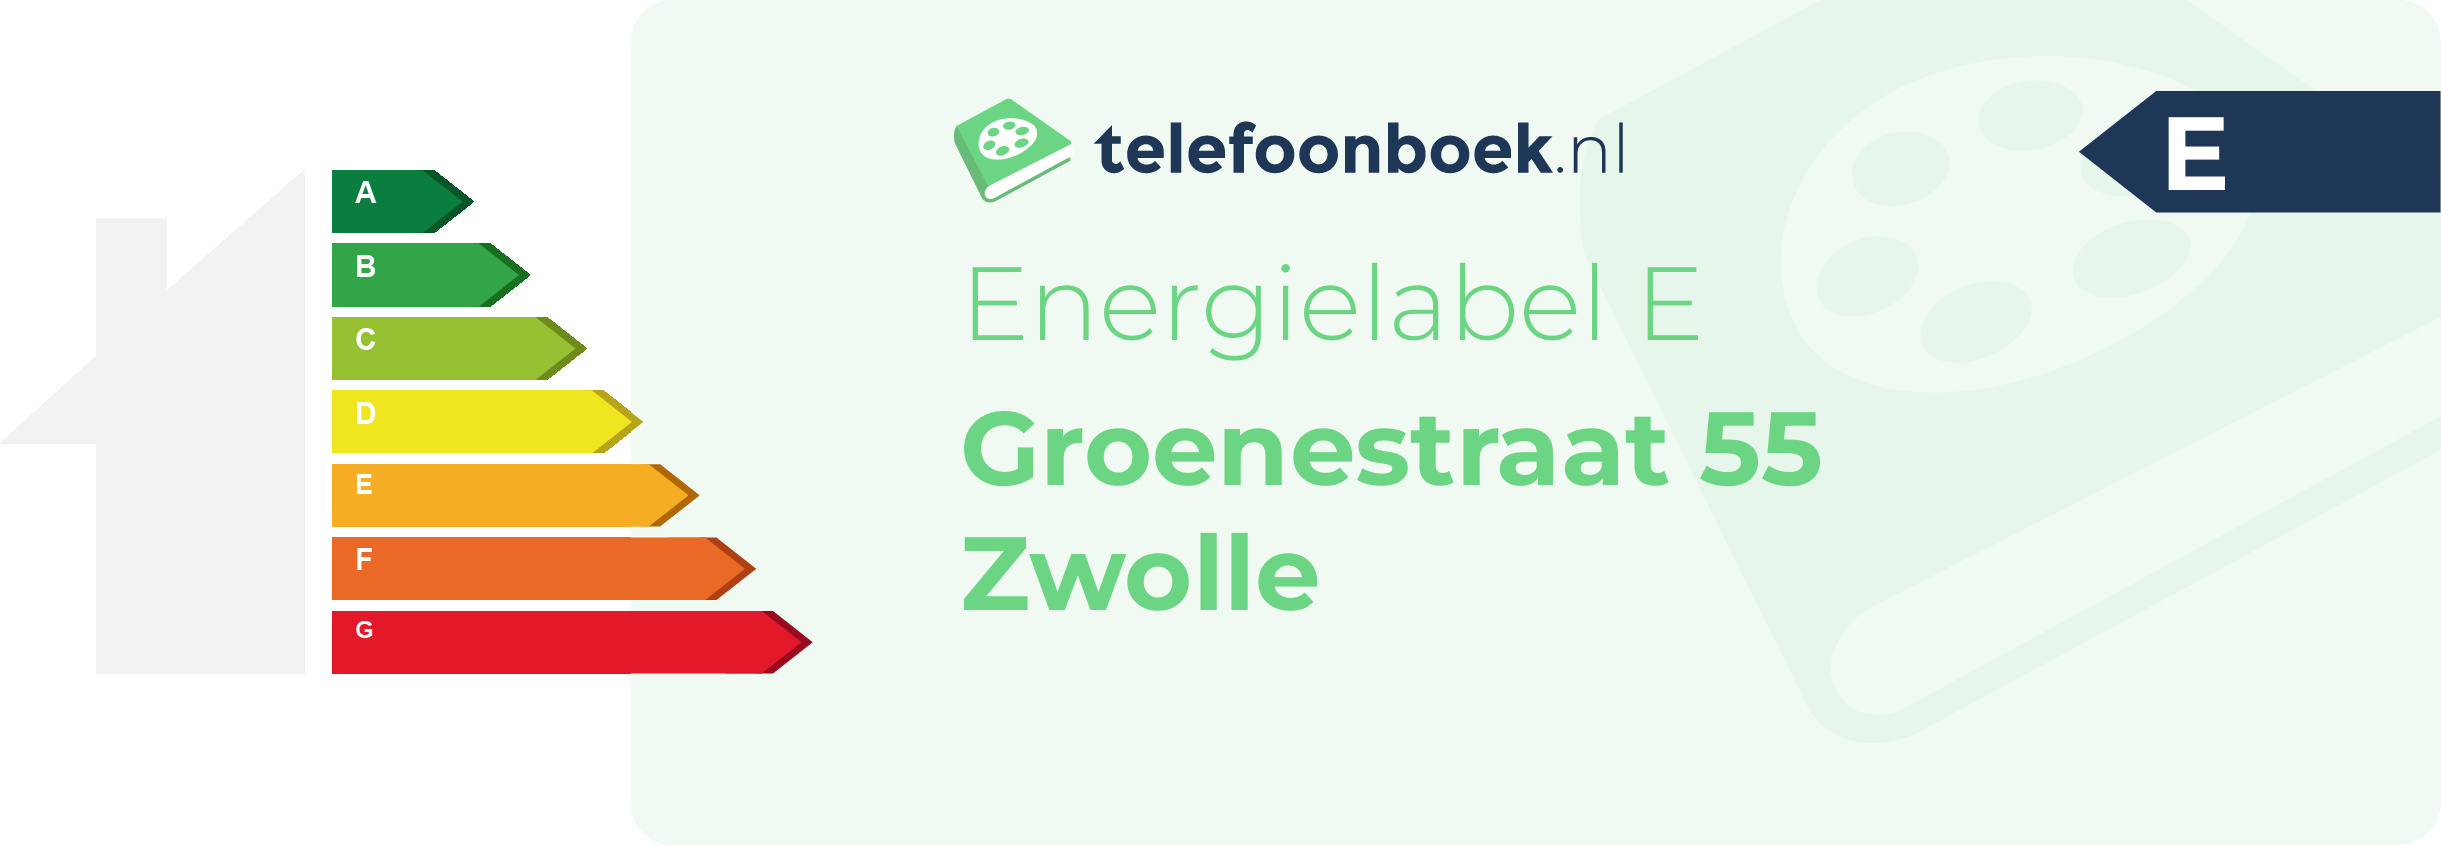 Energielabel Groenestraat 55 Zwolle